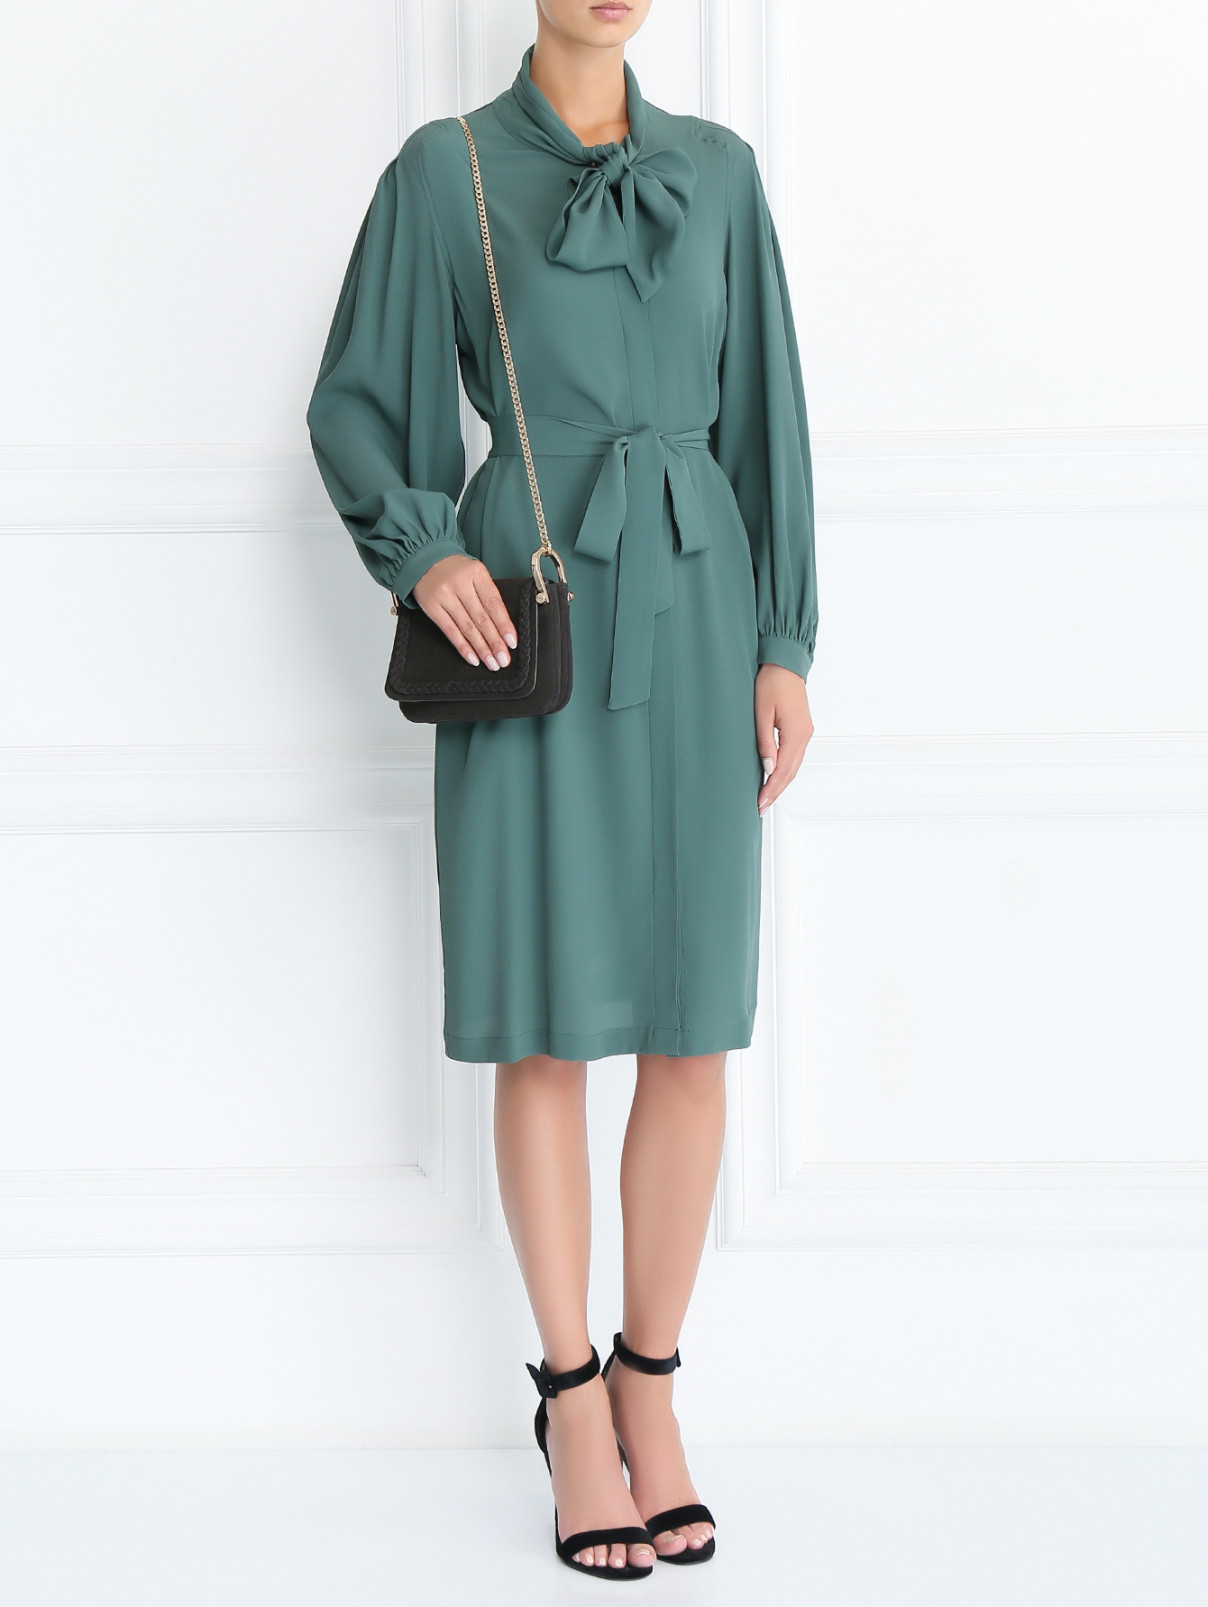 Платье свободного кроя с поясом Erika Cavallini  –  Модель Общий вид  – Цвет:  Зеленый